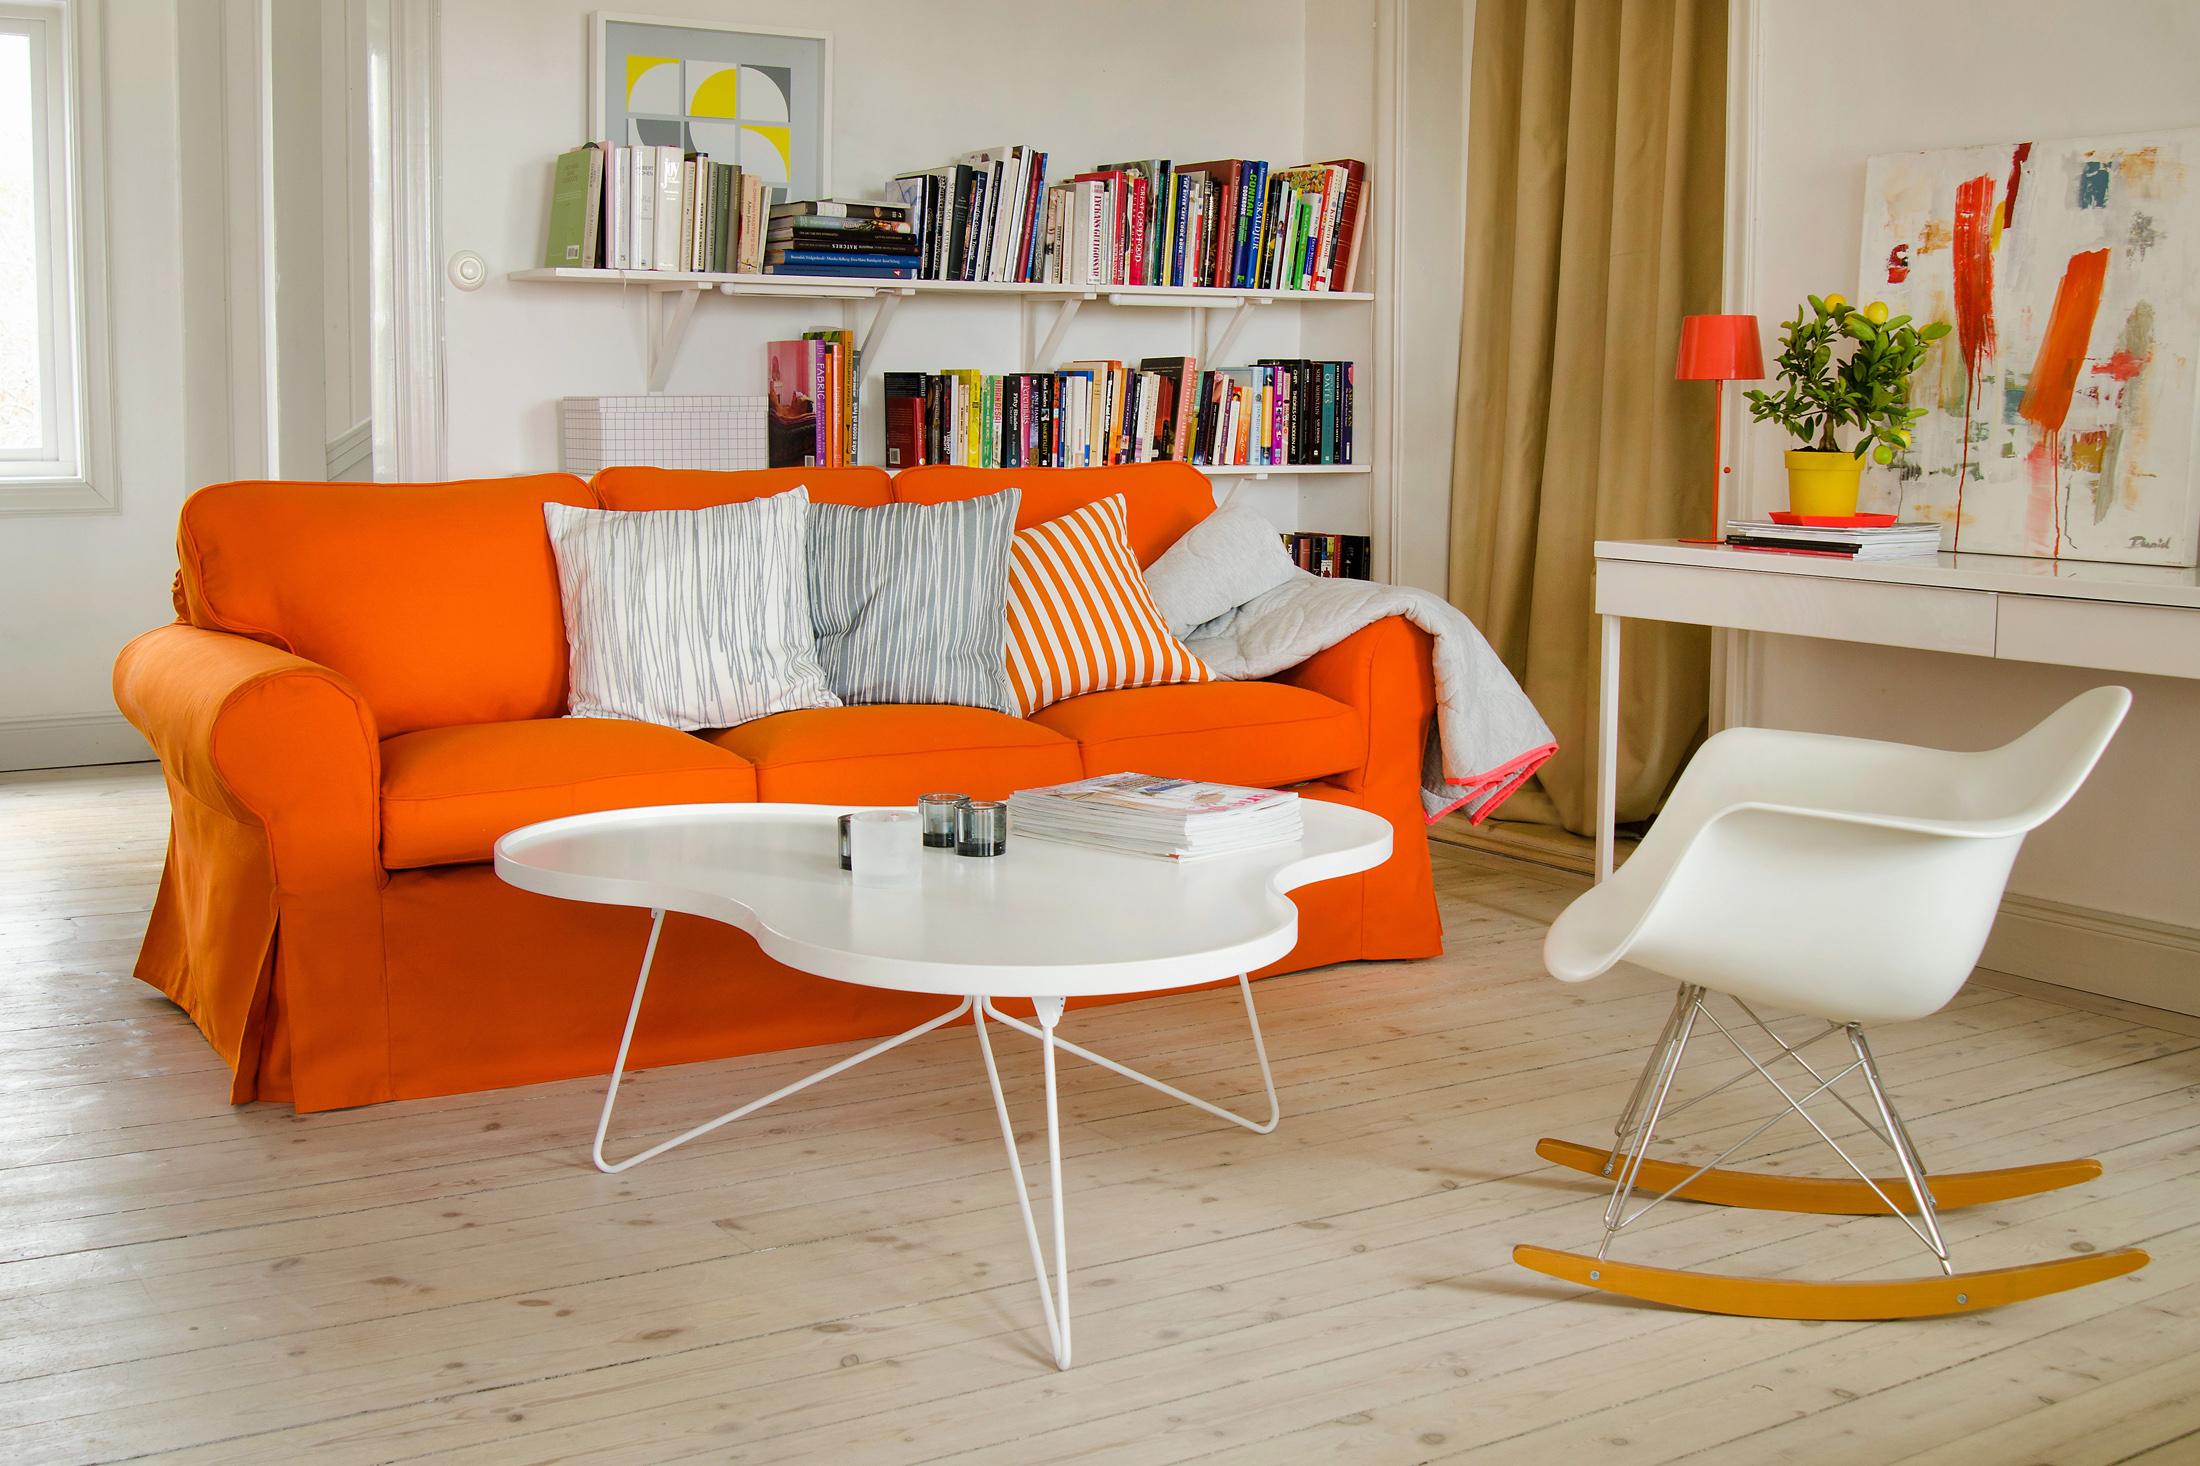 Orangefarbenes Sofa im Wohnzimmer #couchtisch #regal #schreibtisch #kissen #ikea #schaukelstuhl #sofa #tischlampe #weißercouchtisch #orangefarbenessofa ©Bemz